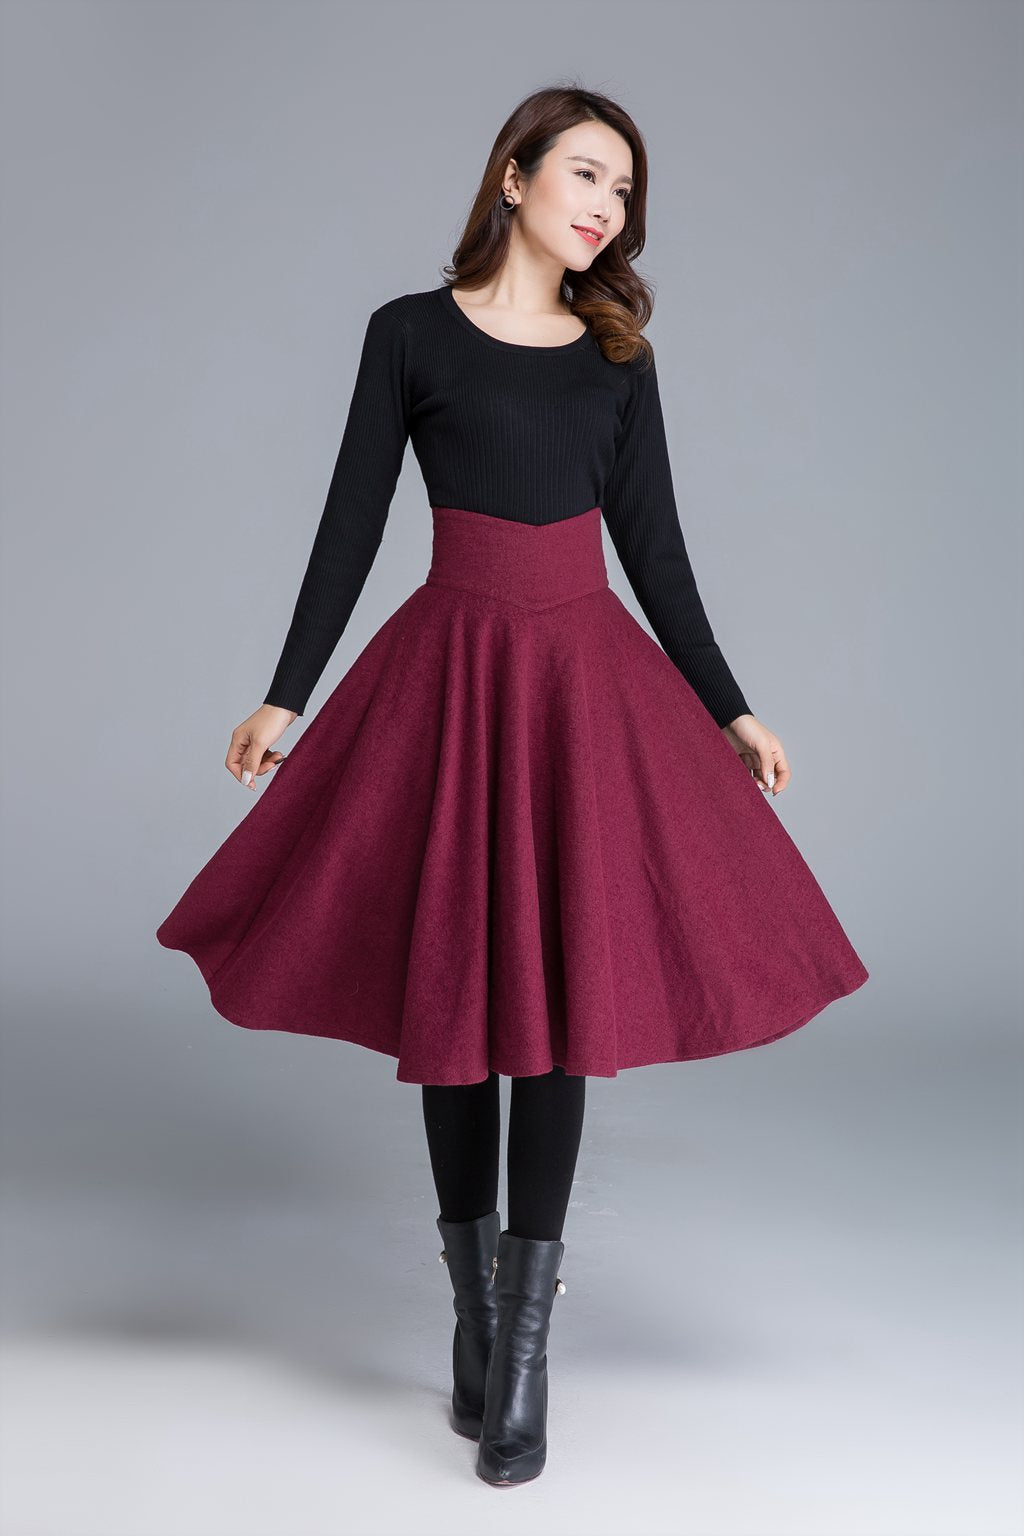 Winter skirt – XiaoLizi